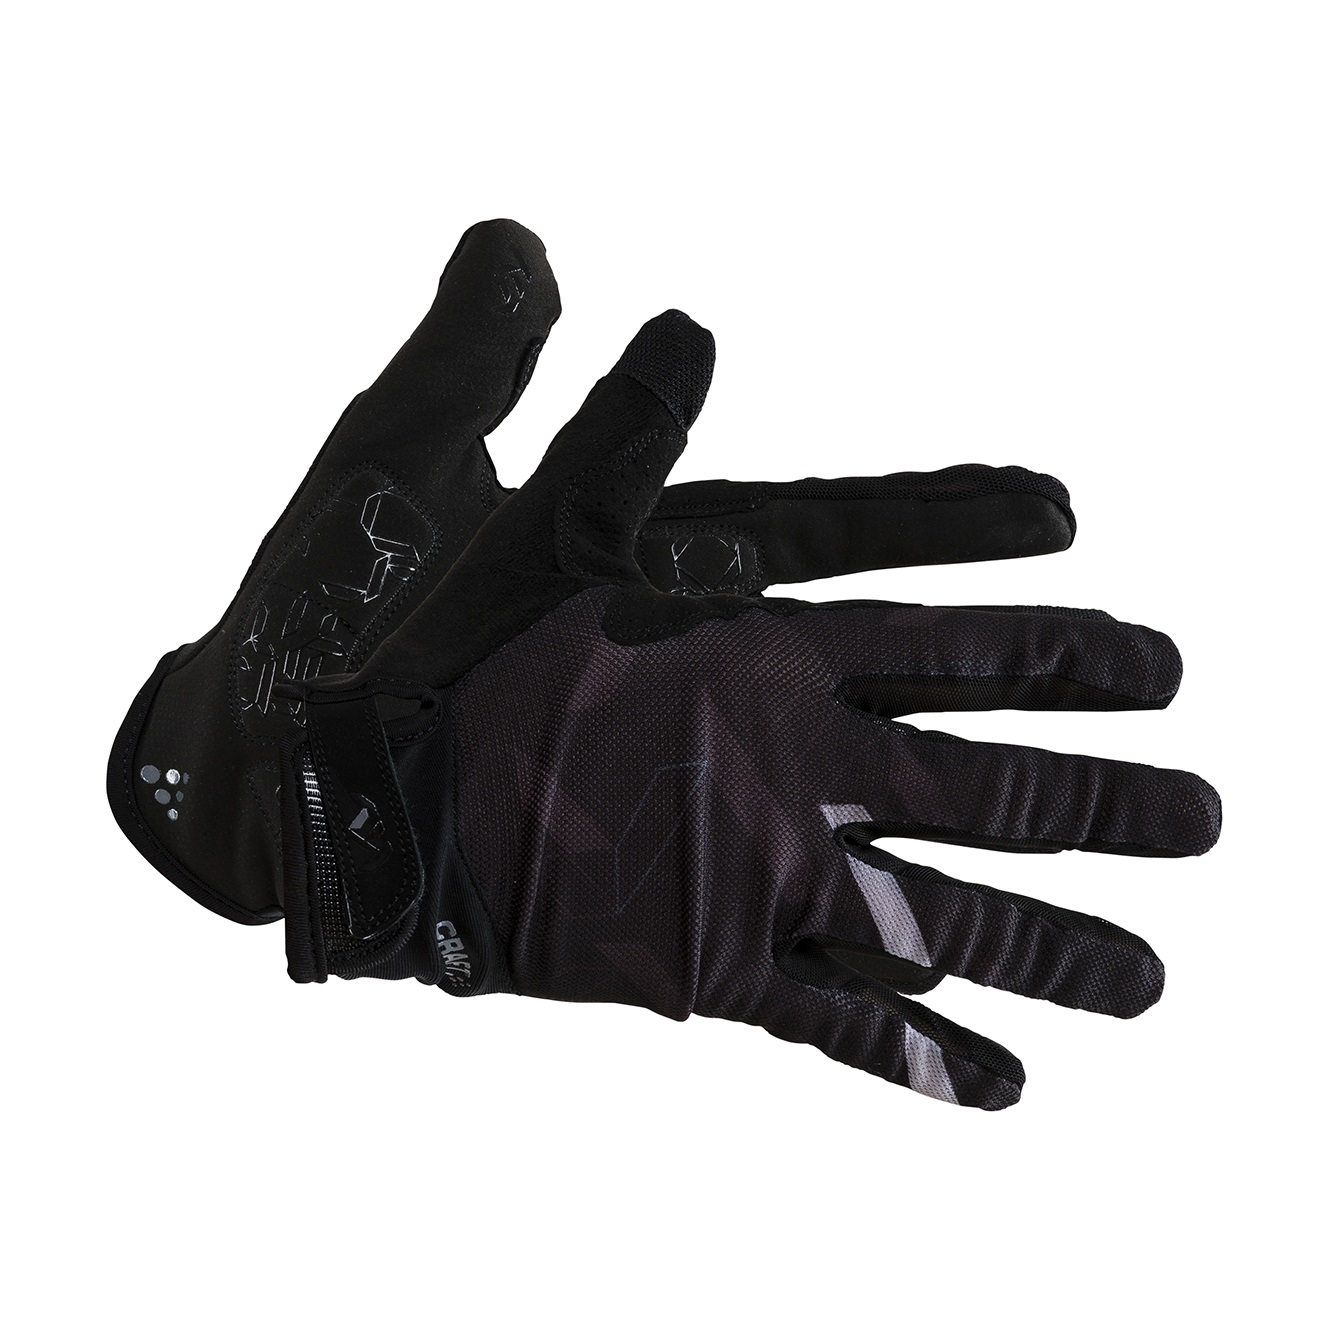 Craft Pioneer Gel Glove Black